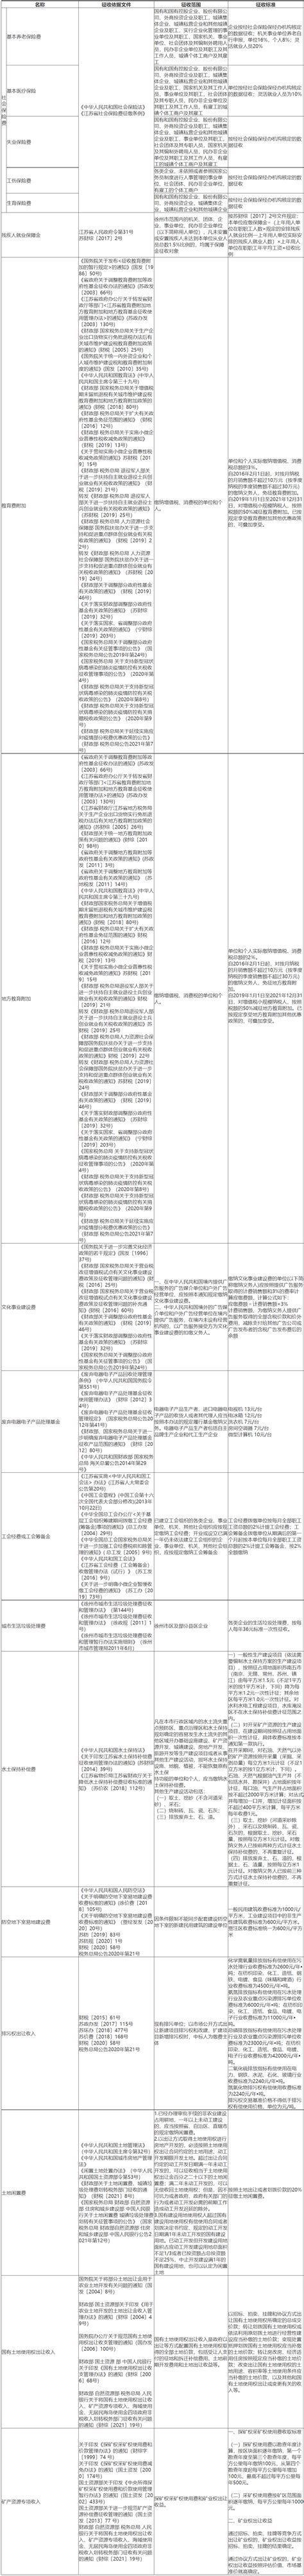 2021年杭州市电子政务行业市场现状及发展趋势分析 创新开发区块链电子印章应用平台_行业研究报告 - 前瞻网